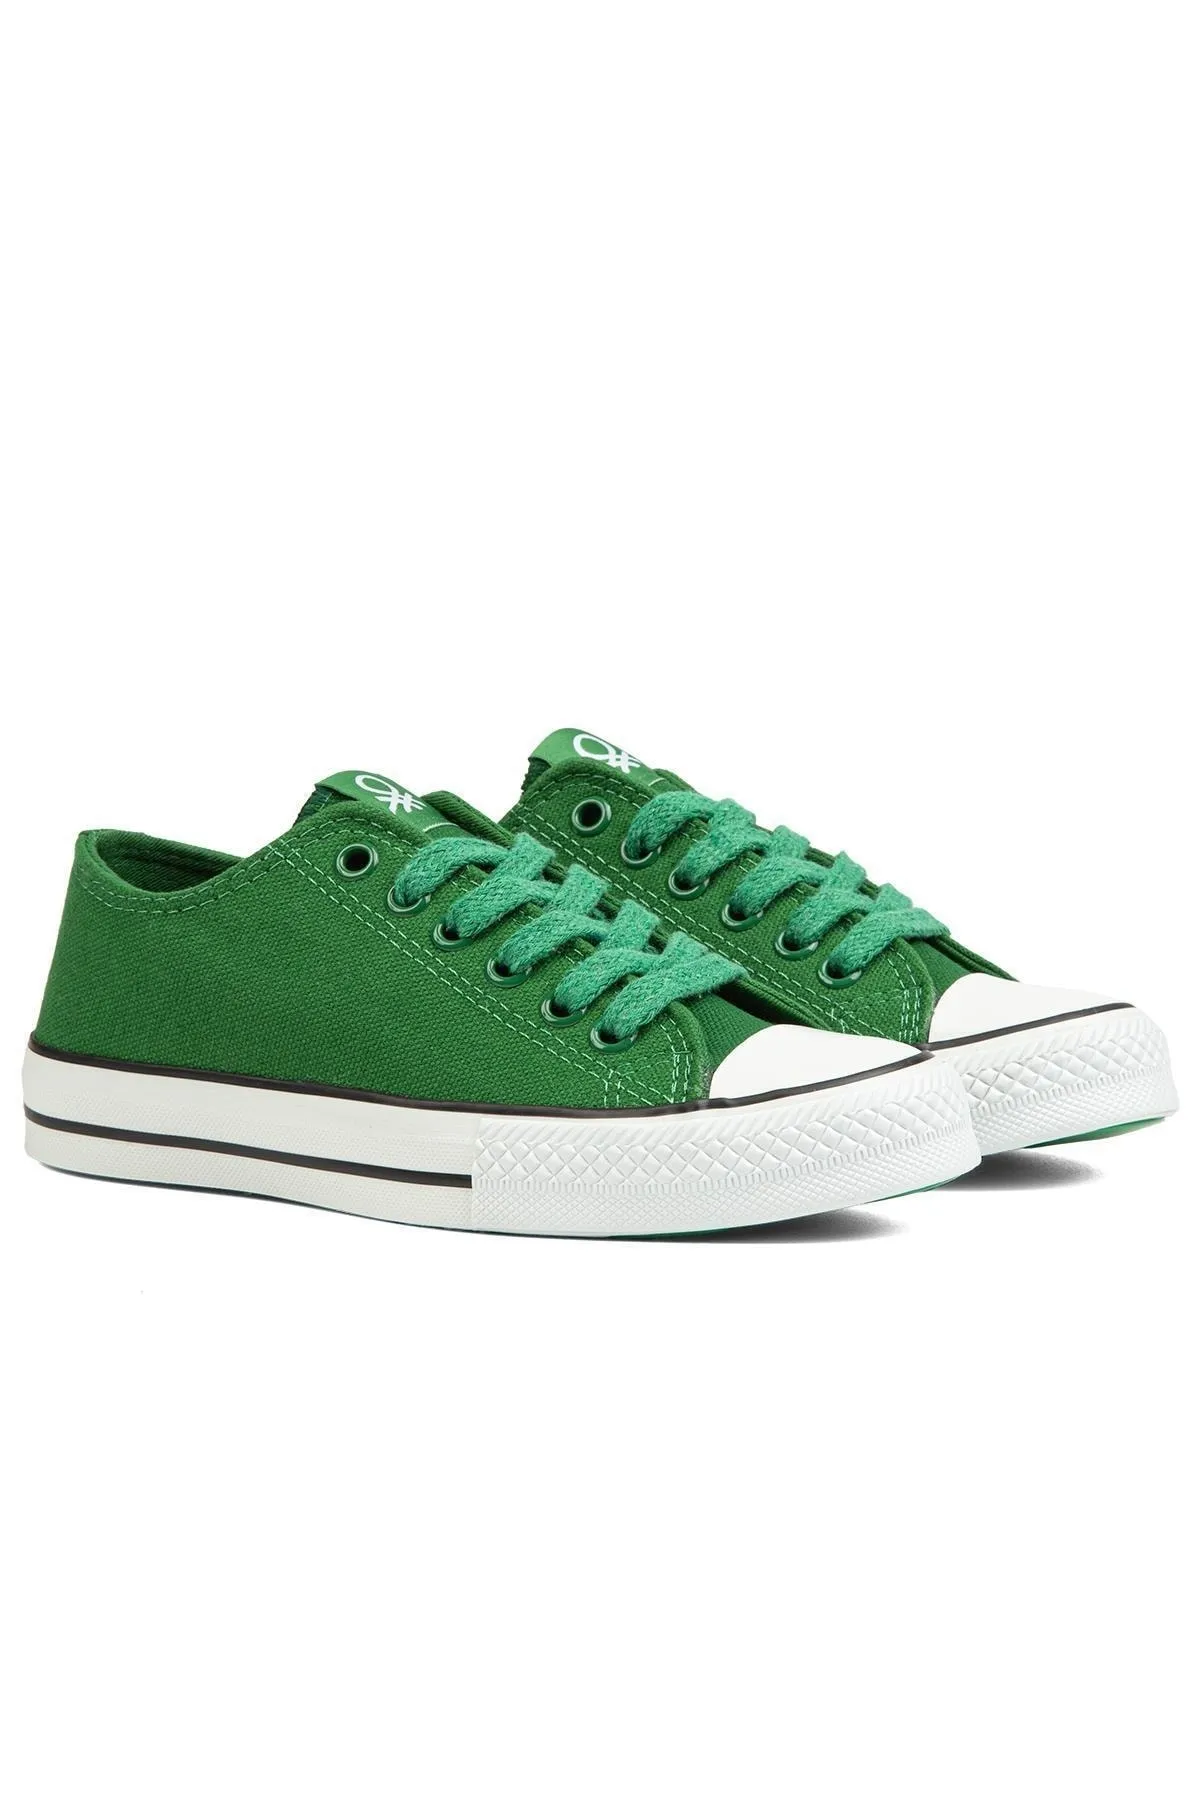 Kadın Spor Ayakkabı BN-30196-Yeşil